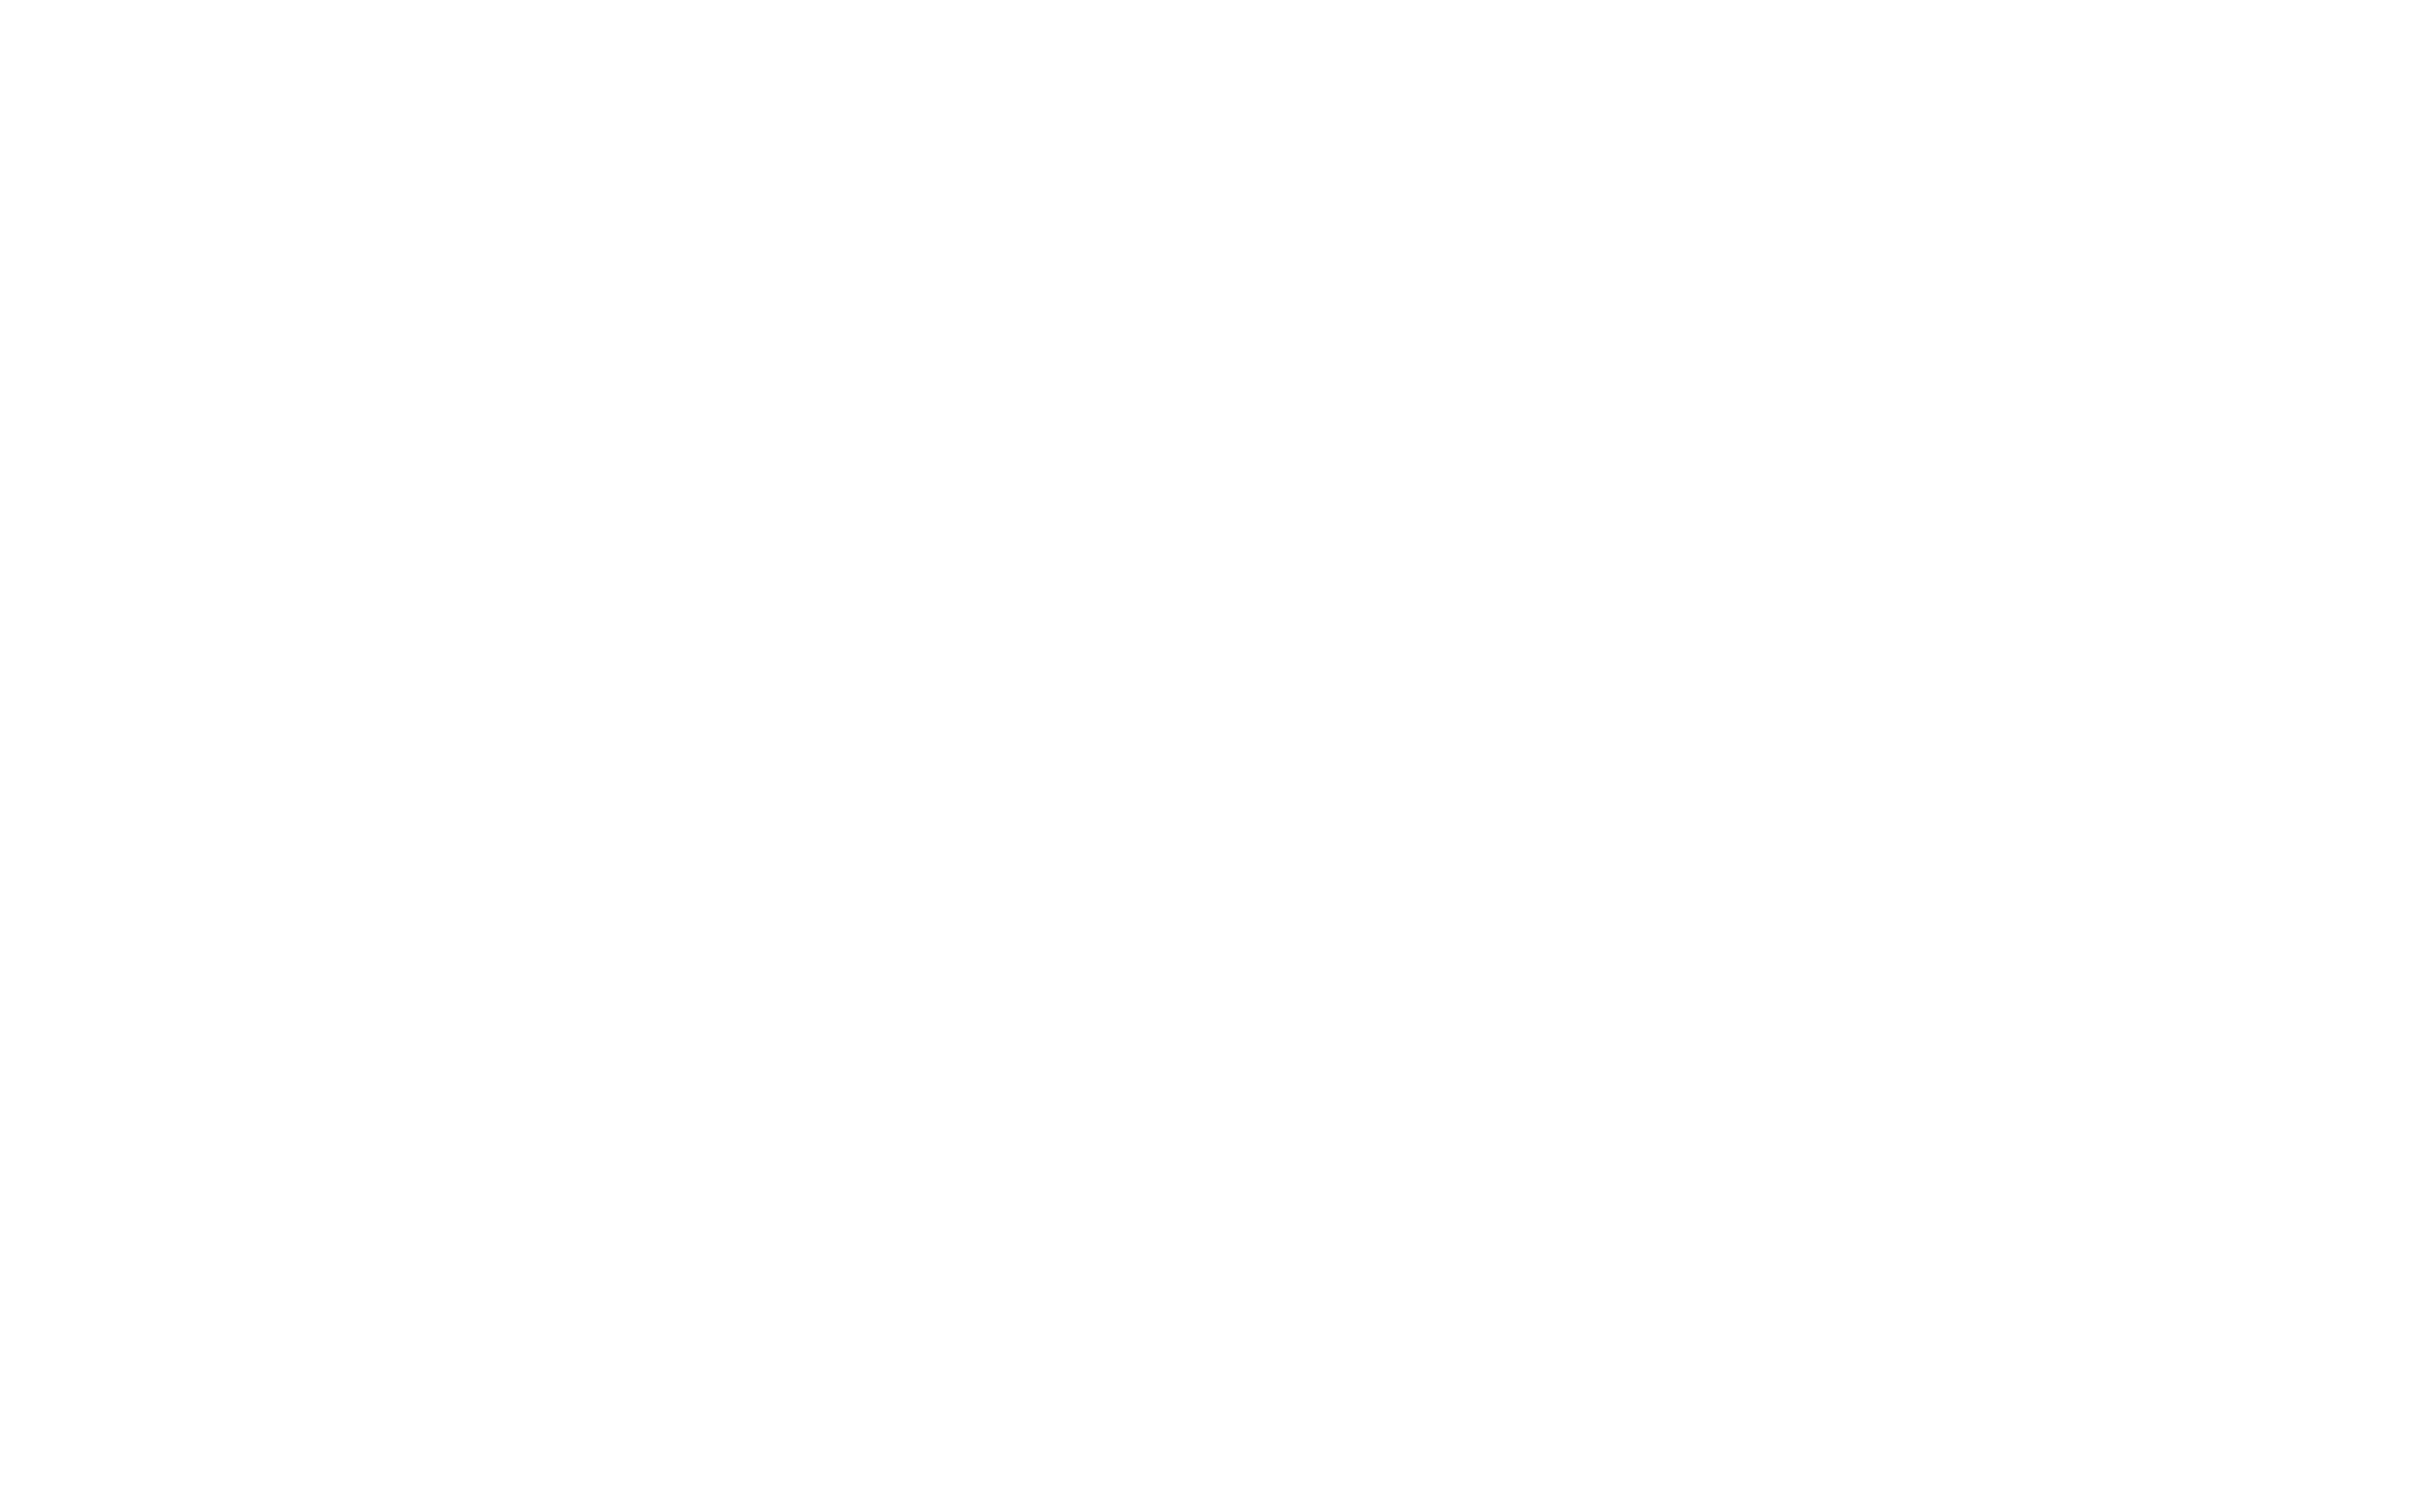 First Dwarf